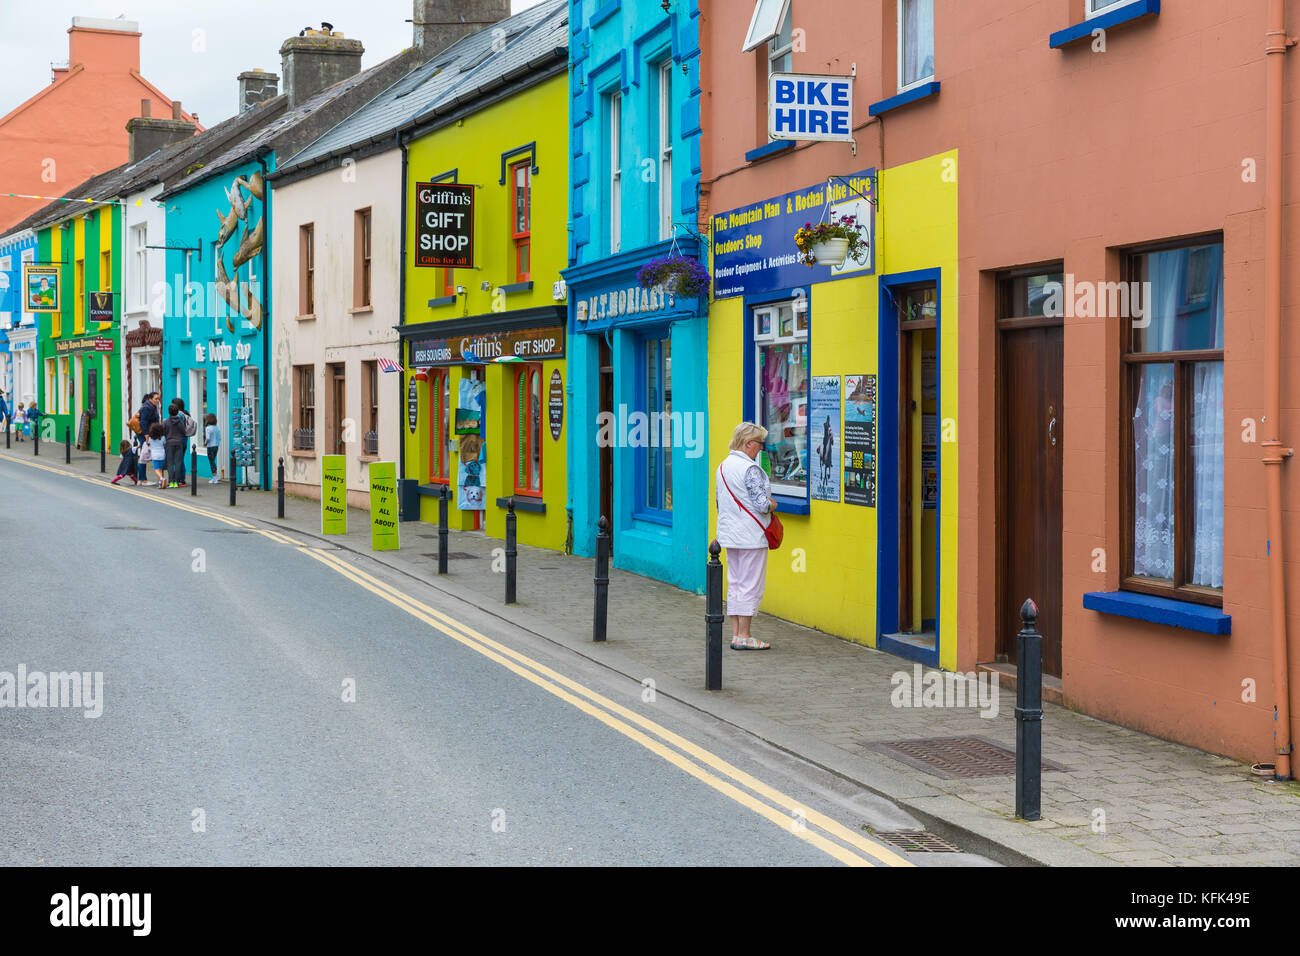 Les maisons colorées à dingle sur la côte sud-ouest de l'Irlande Banque D'Images